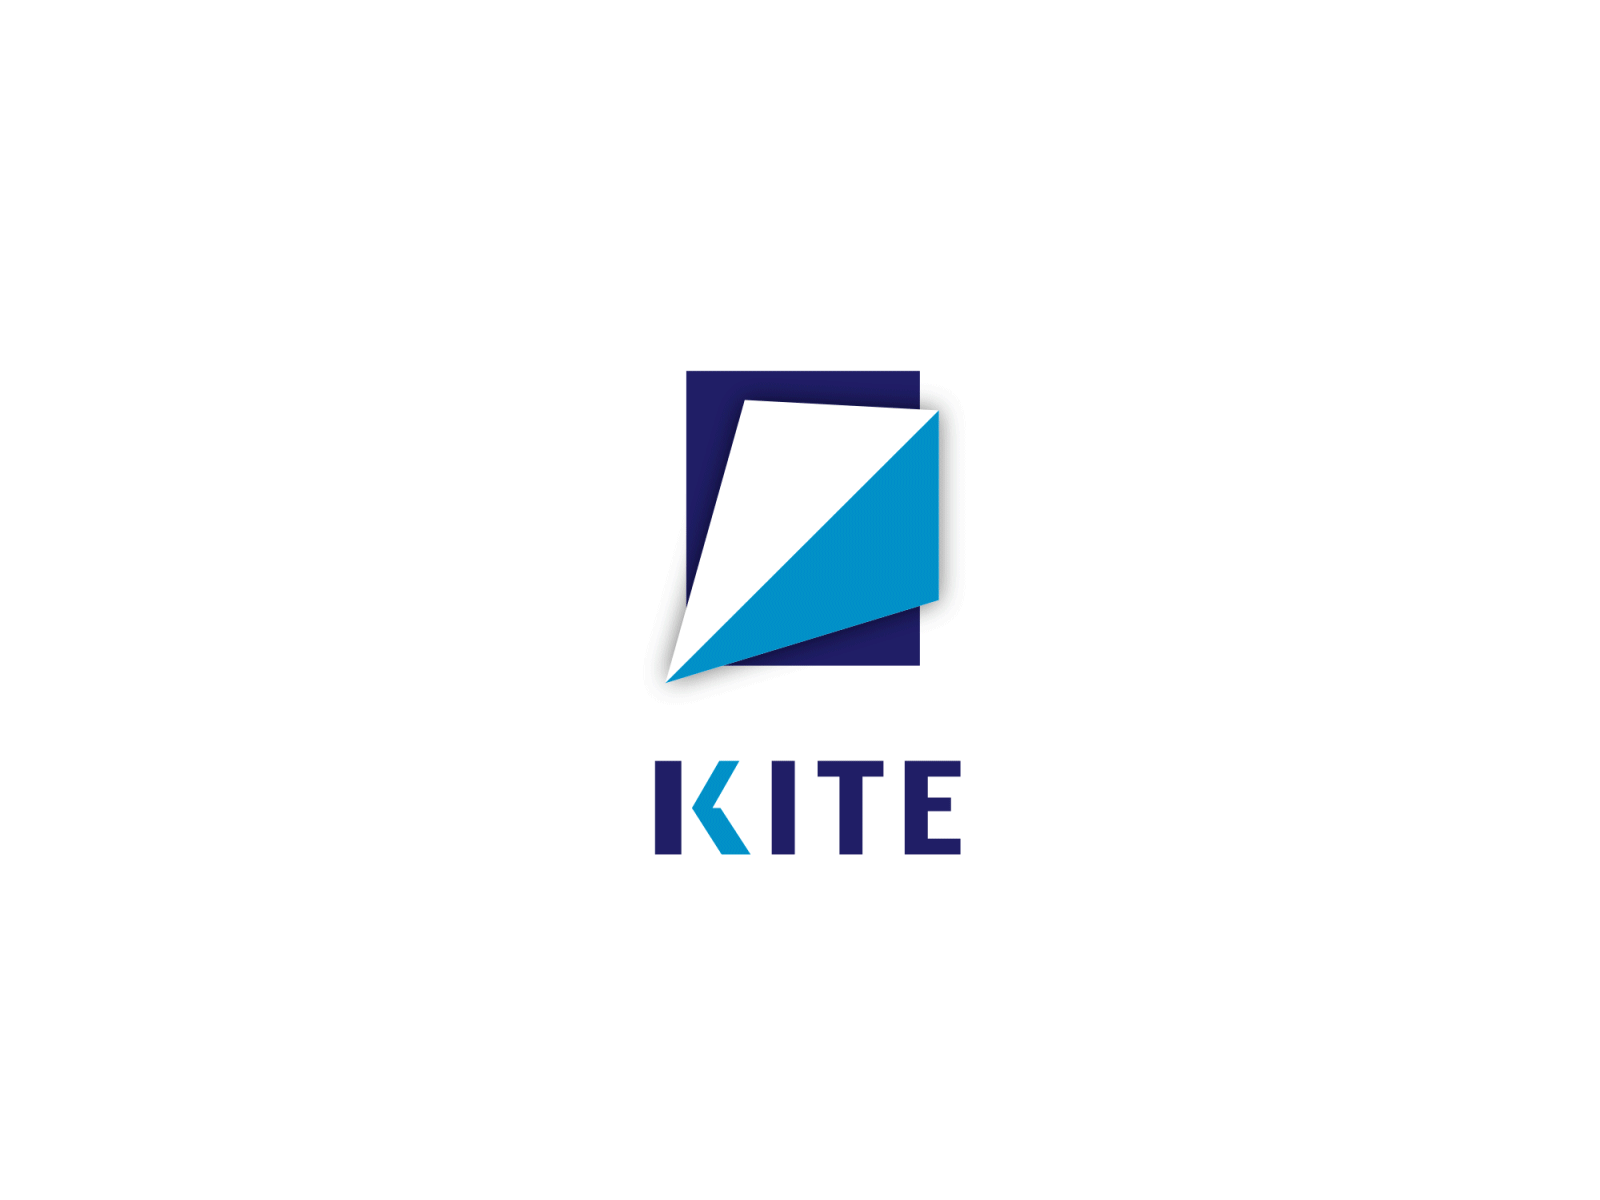 KITE - K Letter Logo | Letter logo, Lettering, ? logo